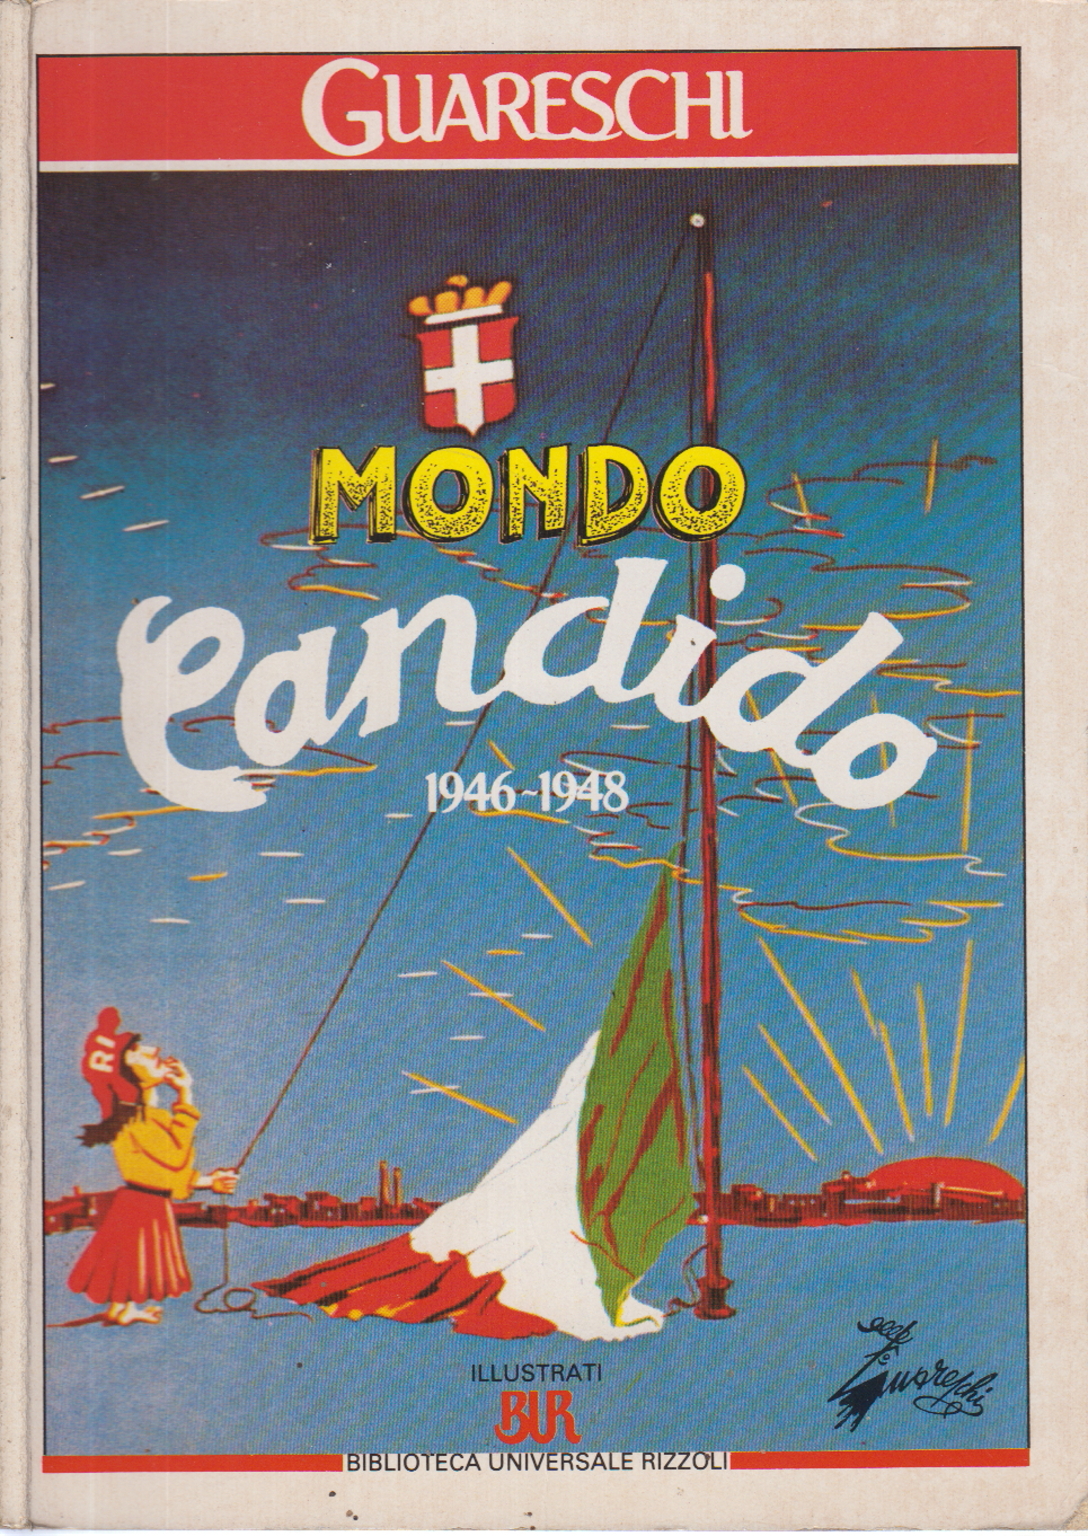 Welt Candido 1946-1948, Guareschi